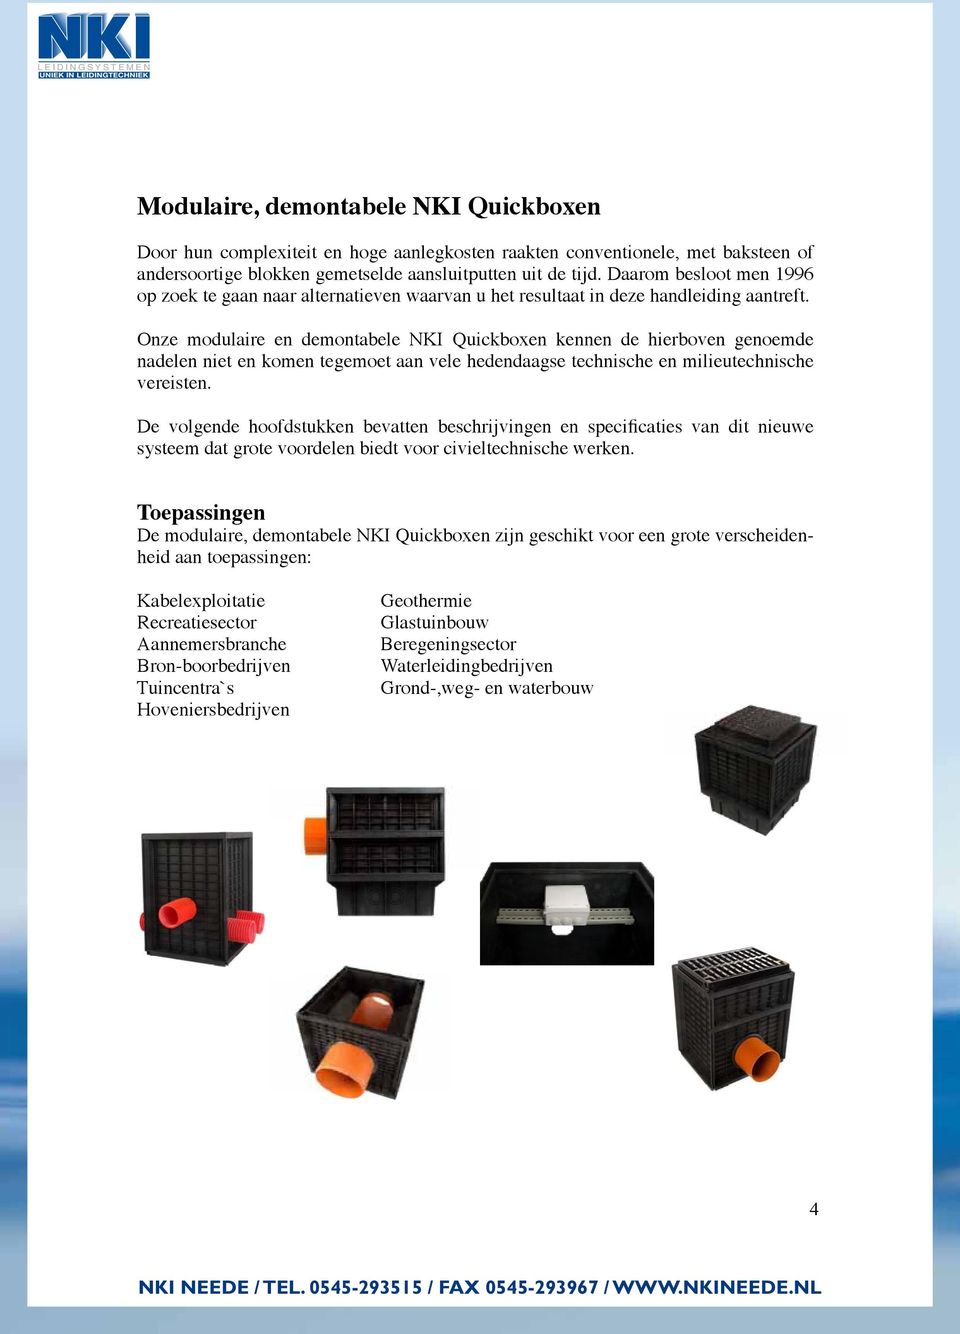 Onze modulaire en demontabele NKI Quickboxen kennen de hierboven genoemde nadelen niet en komen tegemoet aan vele hedendaagse technische en milieutechnische vereisten.